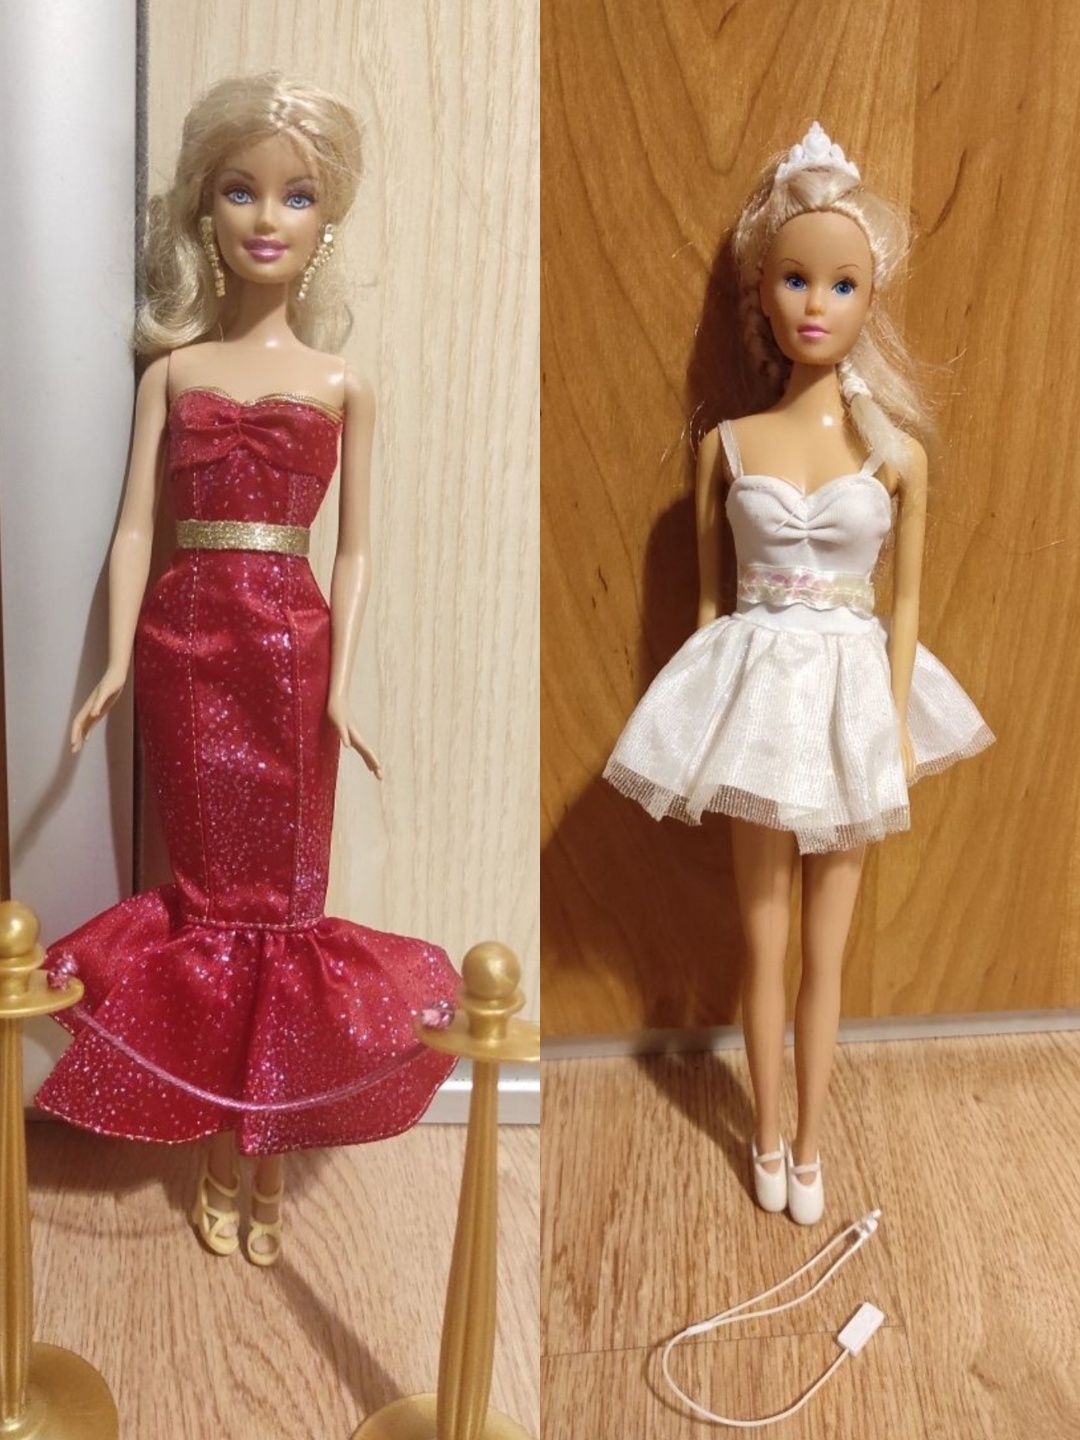 2 Lalki Barbie gwiazda filmowa i baletnica